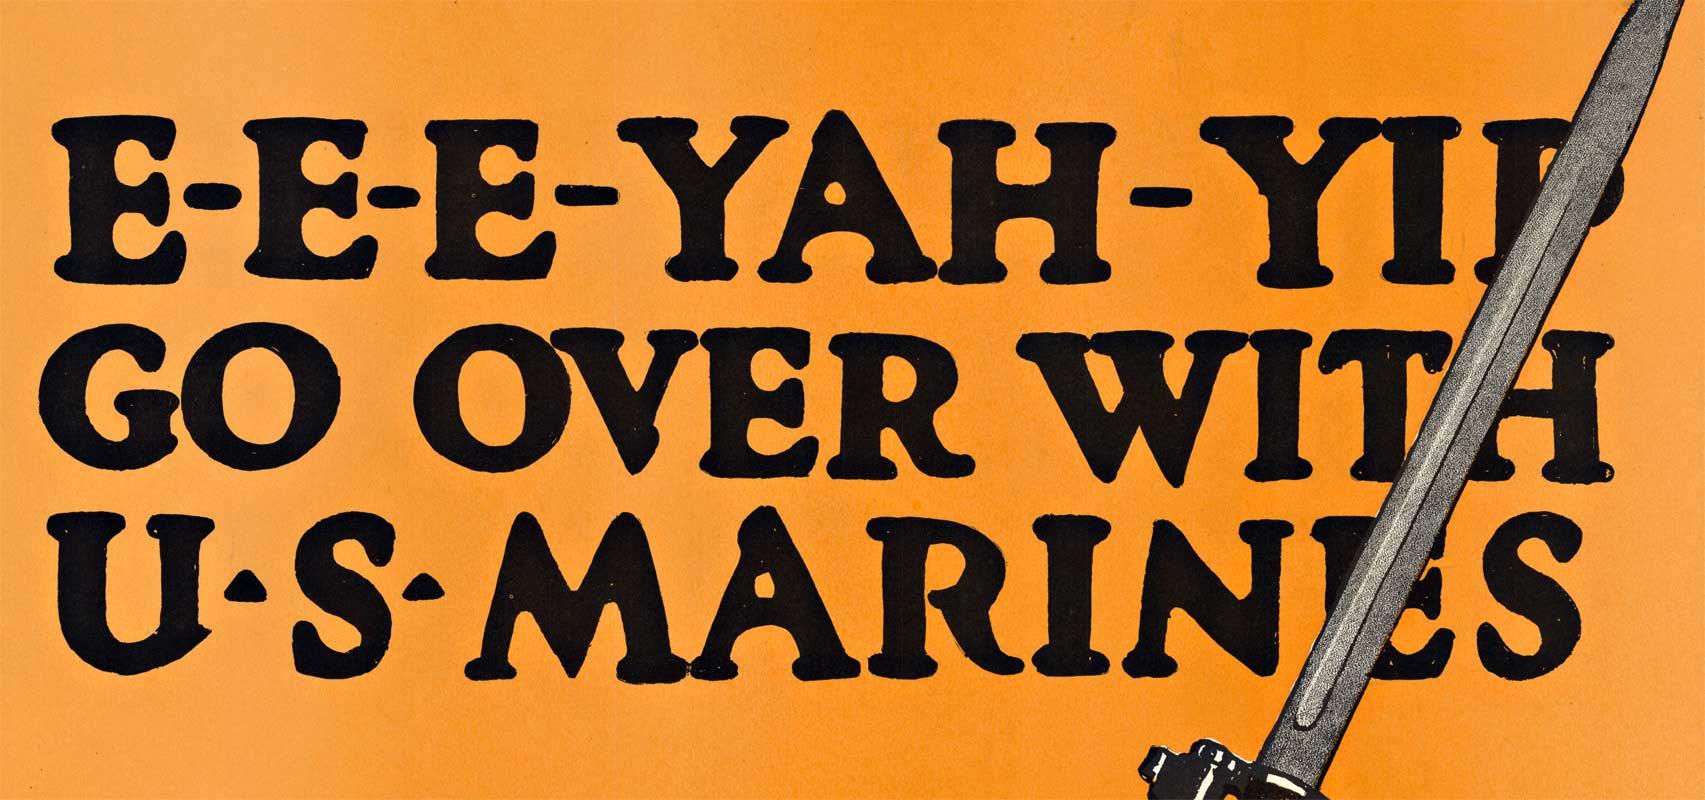 Original Marinesoldaten 1. Weltkrieg  Poster. E-E-E-E-YAH-YIP Übernahme mit den U. S. Marines (Akademisch), Print, von C B Falls